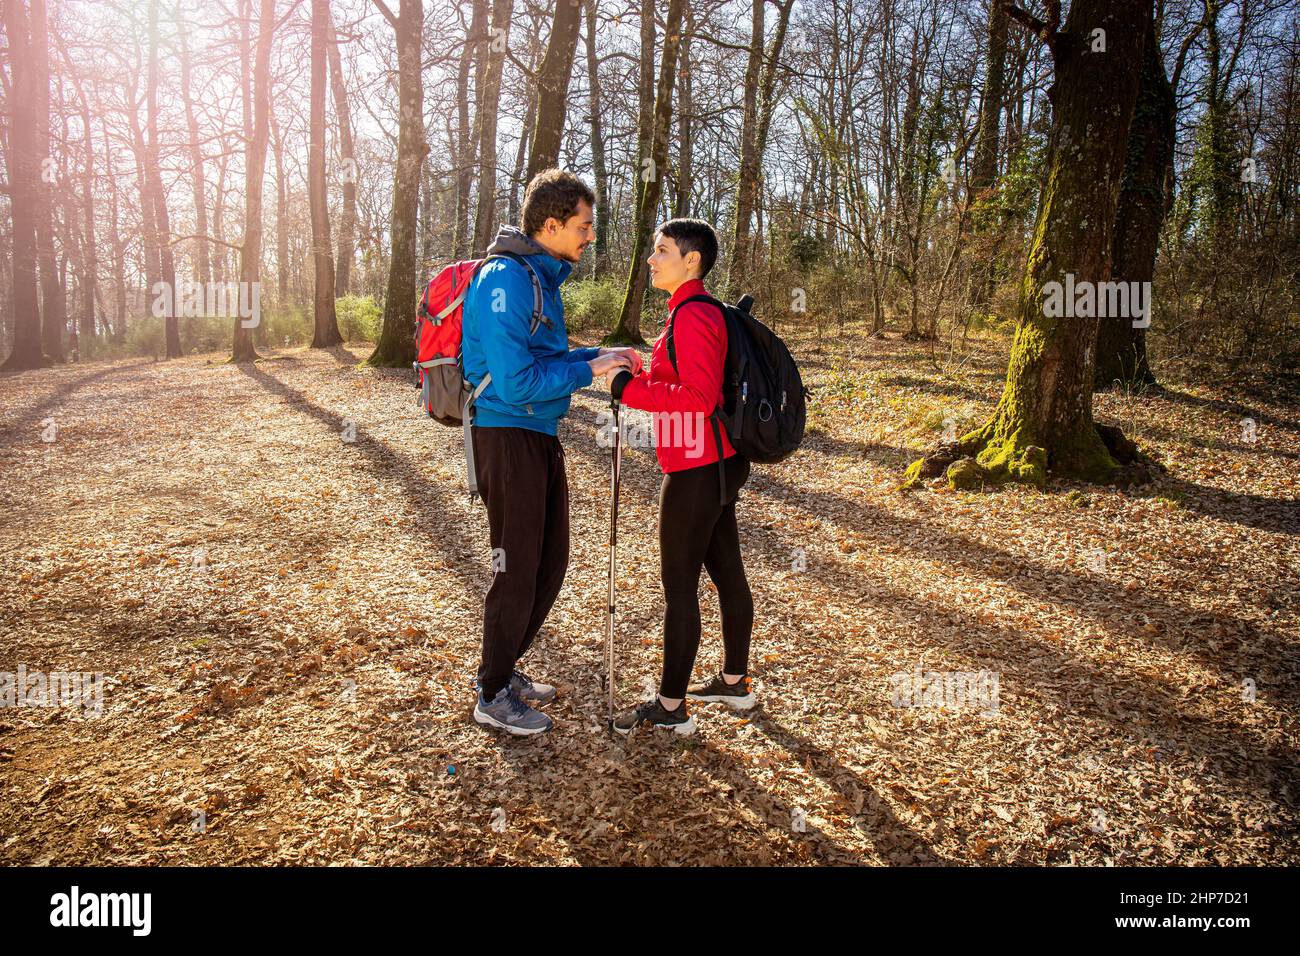 Schönes junges Paar ist Wandern im Wald. Der Mann spricht mit dem Mädchen über sie, als er sie in die Hände nimmt. Reise- und Naturkonzept. Stockfoto